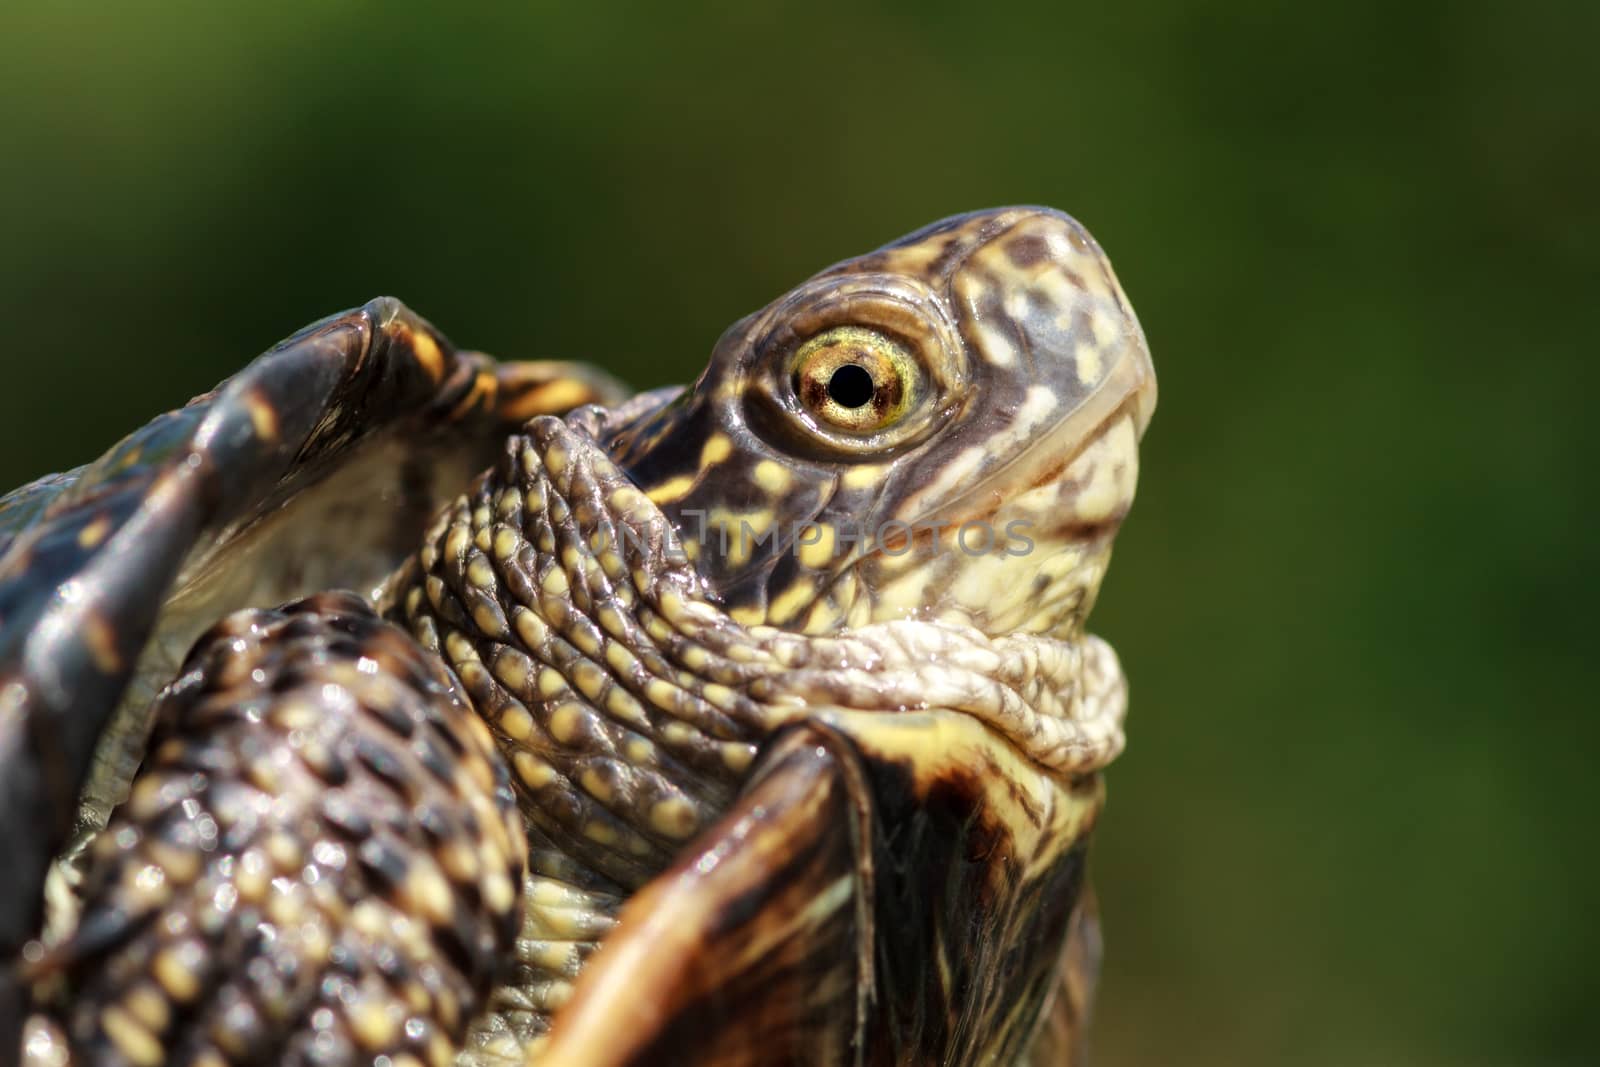 Turtle head closeup by fogen